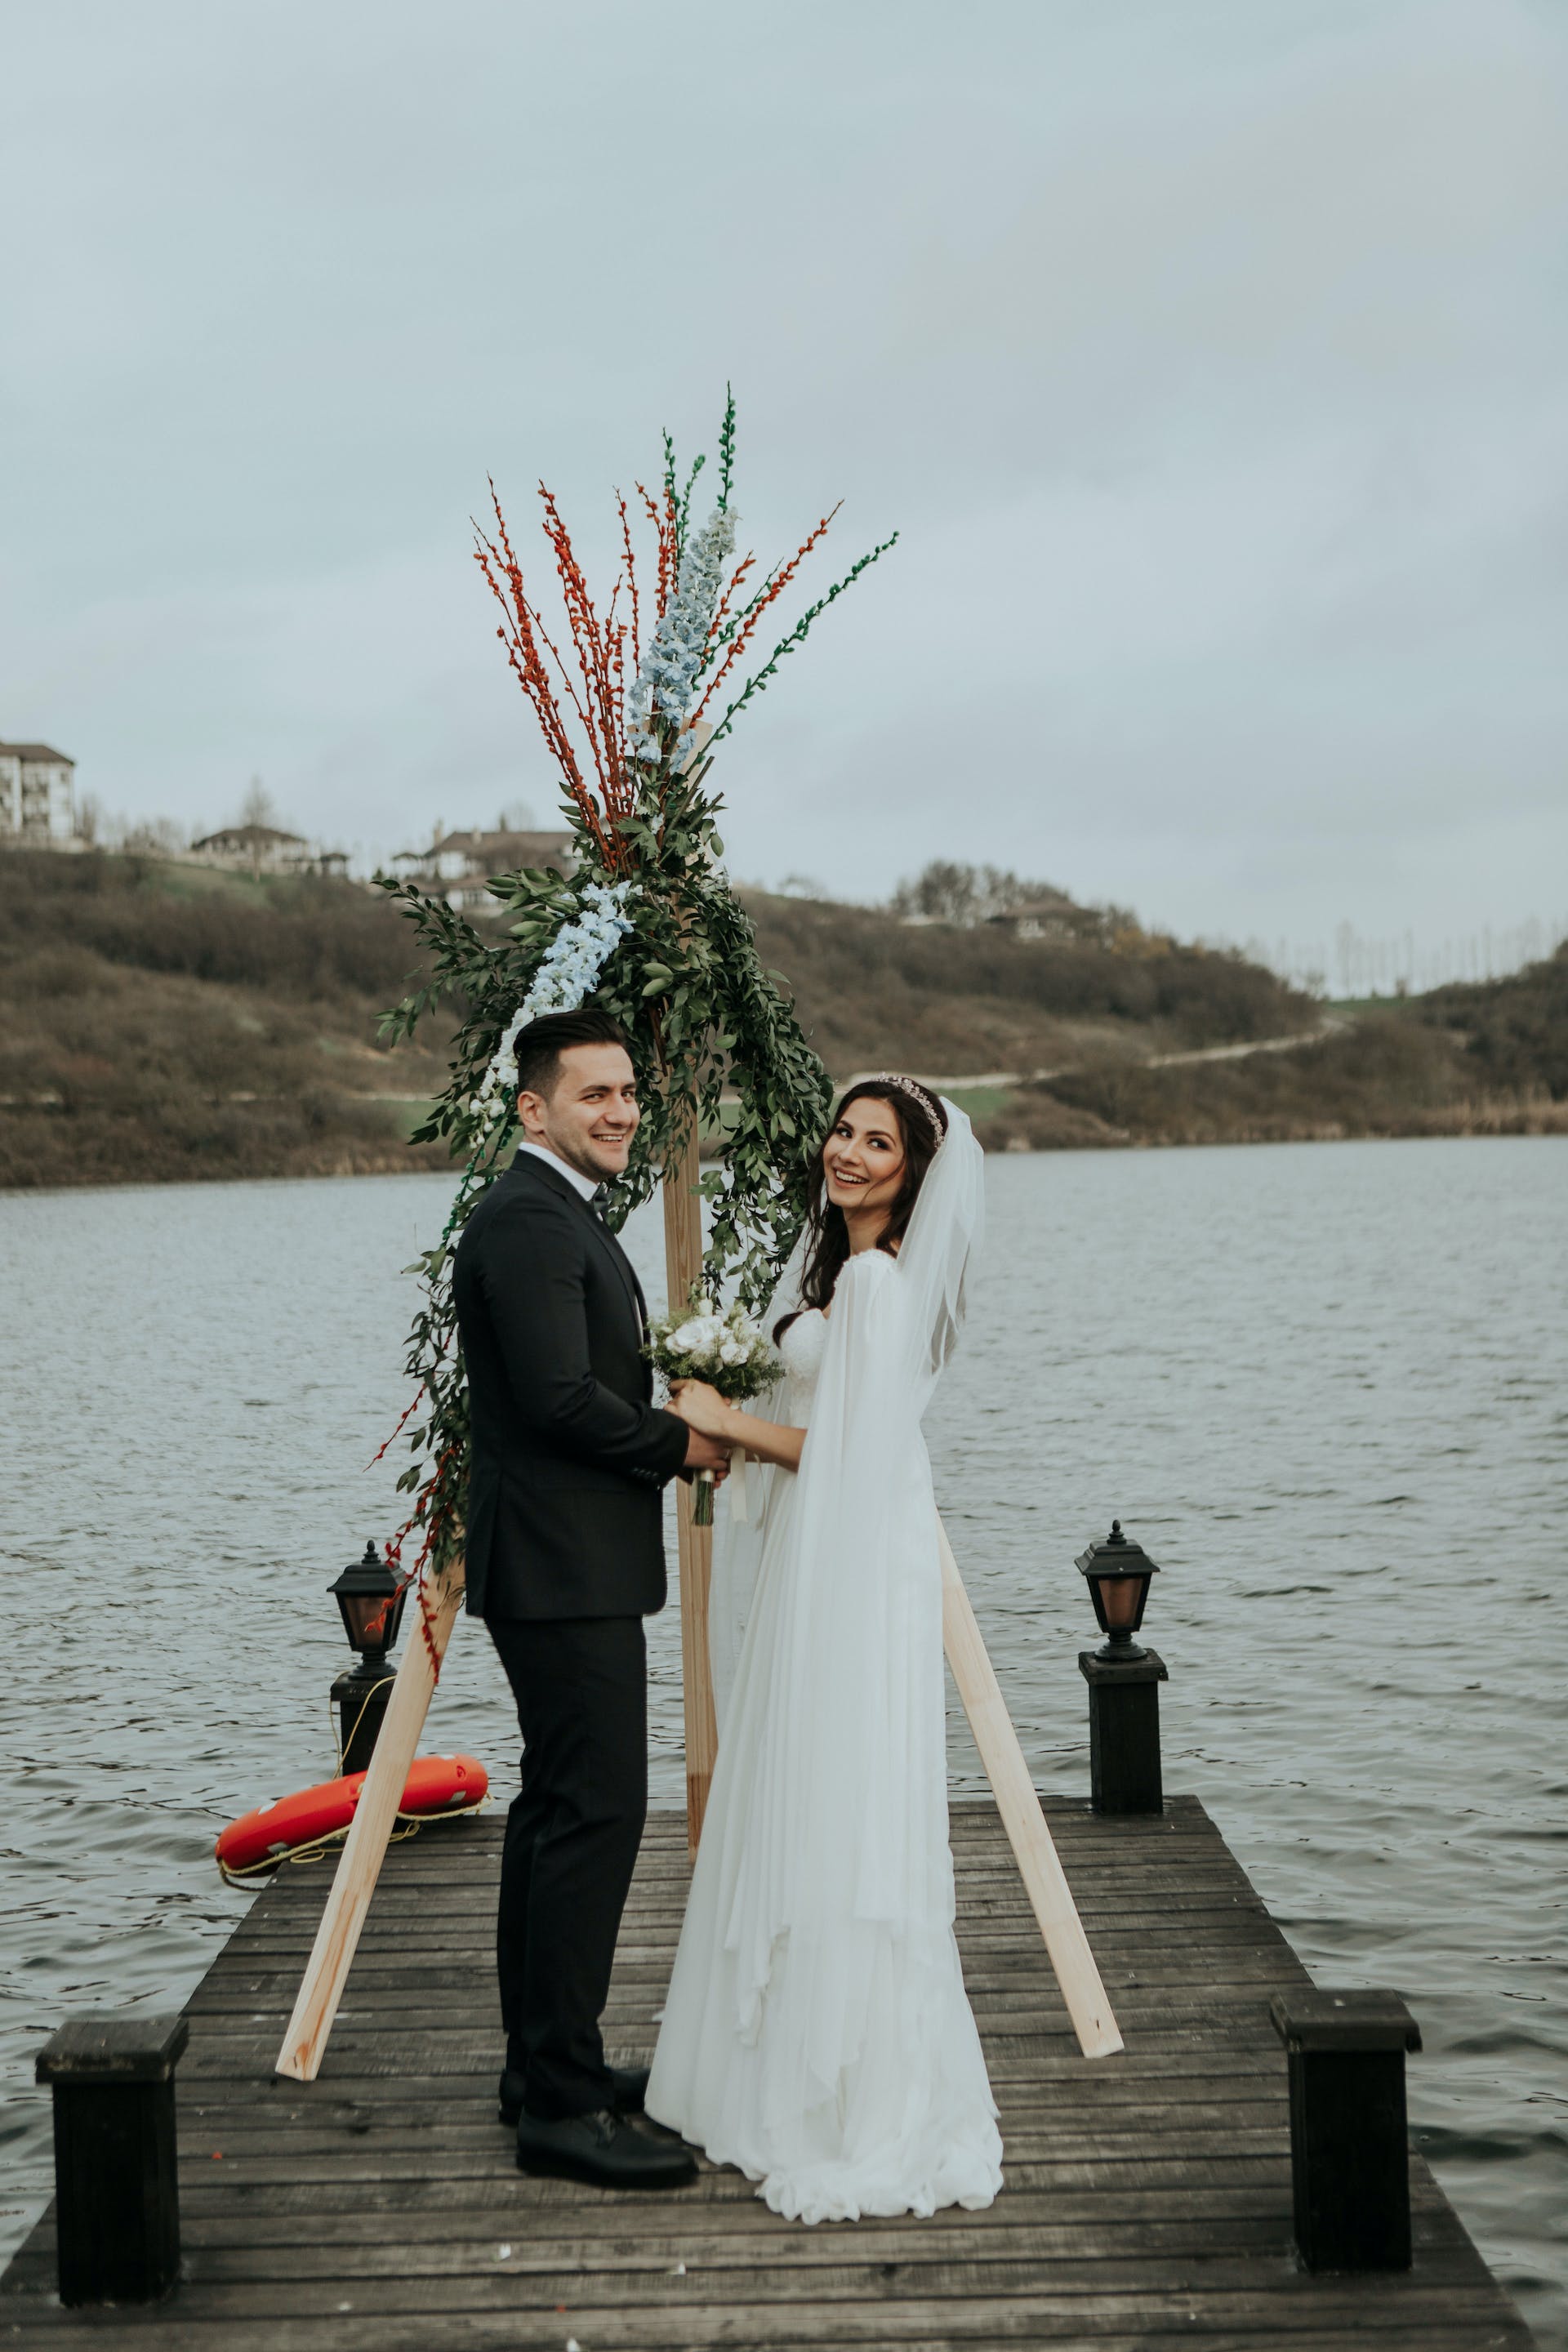 Eine Braut und ein Bräutigam stehen auf einem Pier | Quelle: Pexels